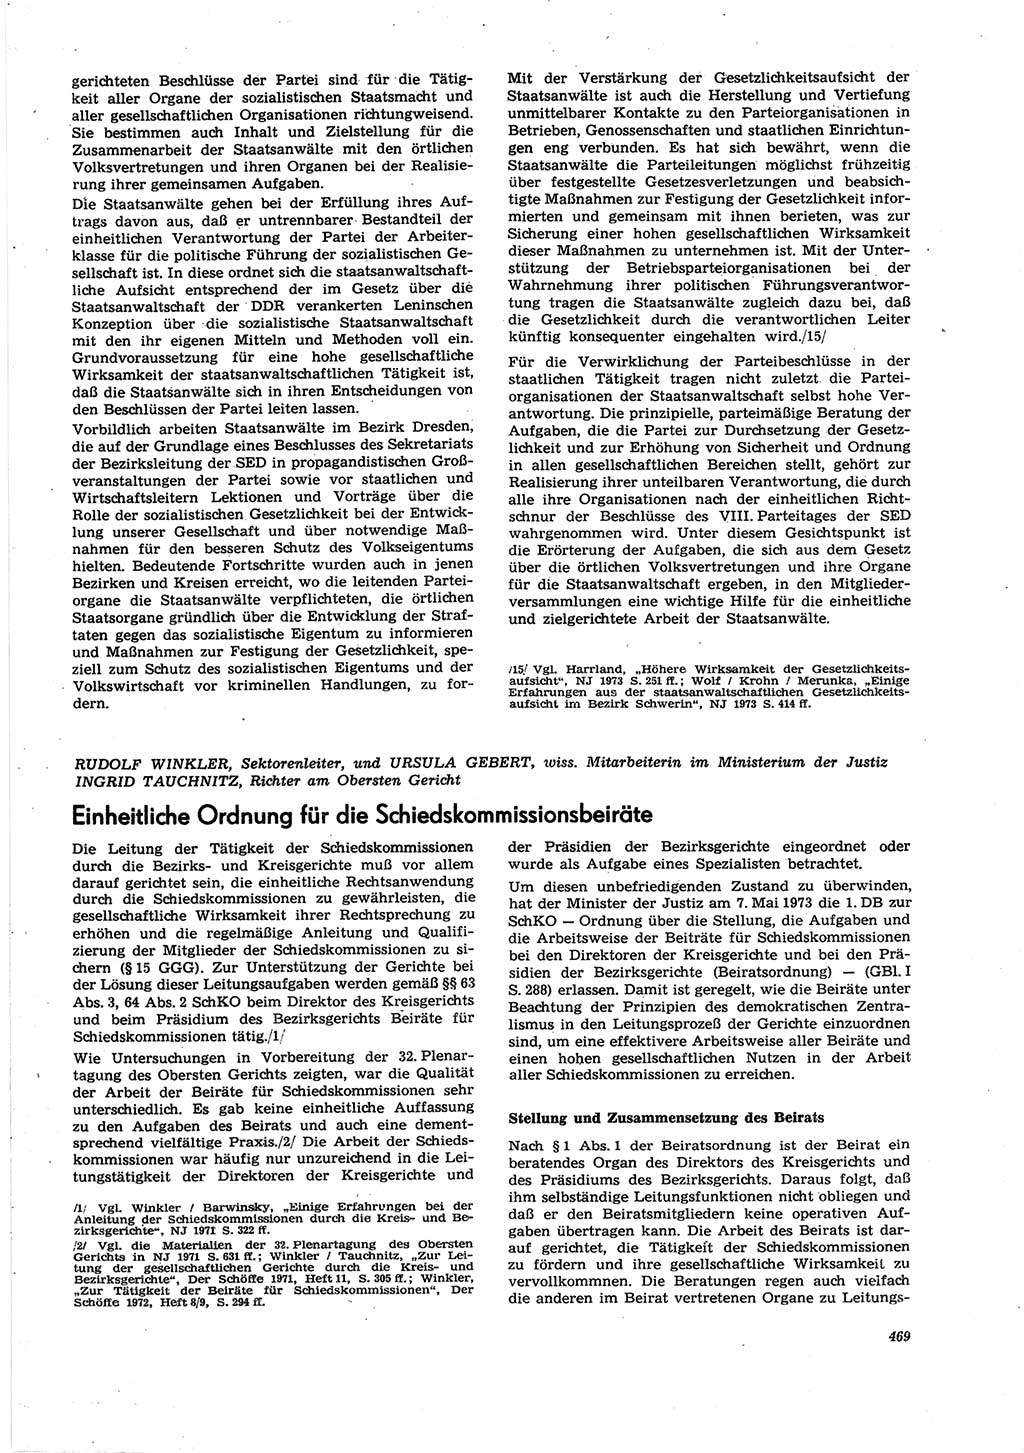 Neue Justiz (NJ), Zeitschrift für Recht und Rechtswissenschaft [Deutsche Demokratische Republik (DDR)], 27. Jahrgang 1973, Seite 469 (NJ DDR 1973, S. 469)